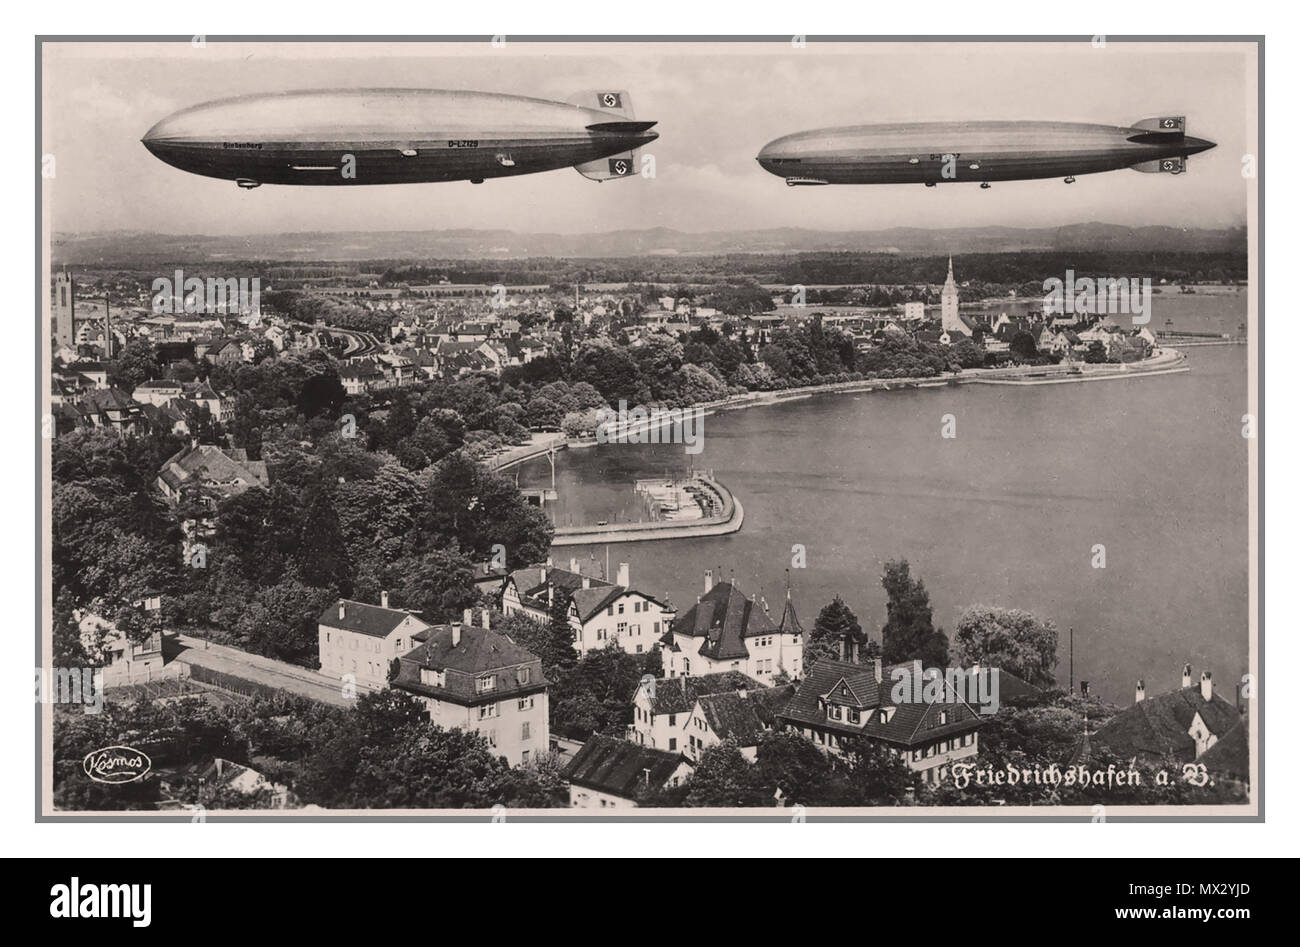 1936 Deutsche NS-Propaganda Postkarte mit zwei Zeppelin-luftschiffe im Flug über Friedrichshafen mit Hakenkreuz Schwanzflosse Förderung der 1936 aus Nazideutschland Olympics. Friedrichshafen ist am besten für die Heimat der Luftschiffbau Zeppelin Airship Company manufacturing Base bekannt Stockfoto